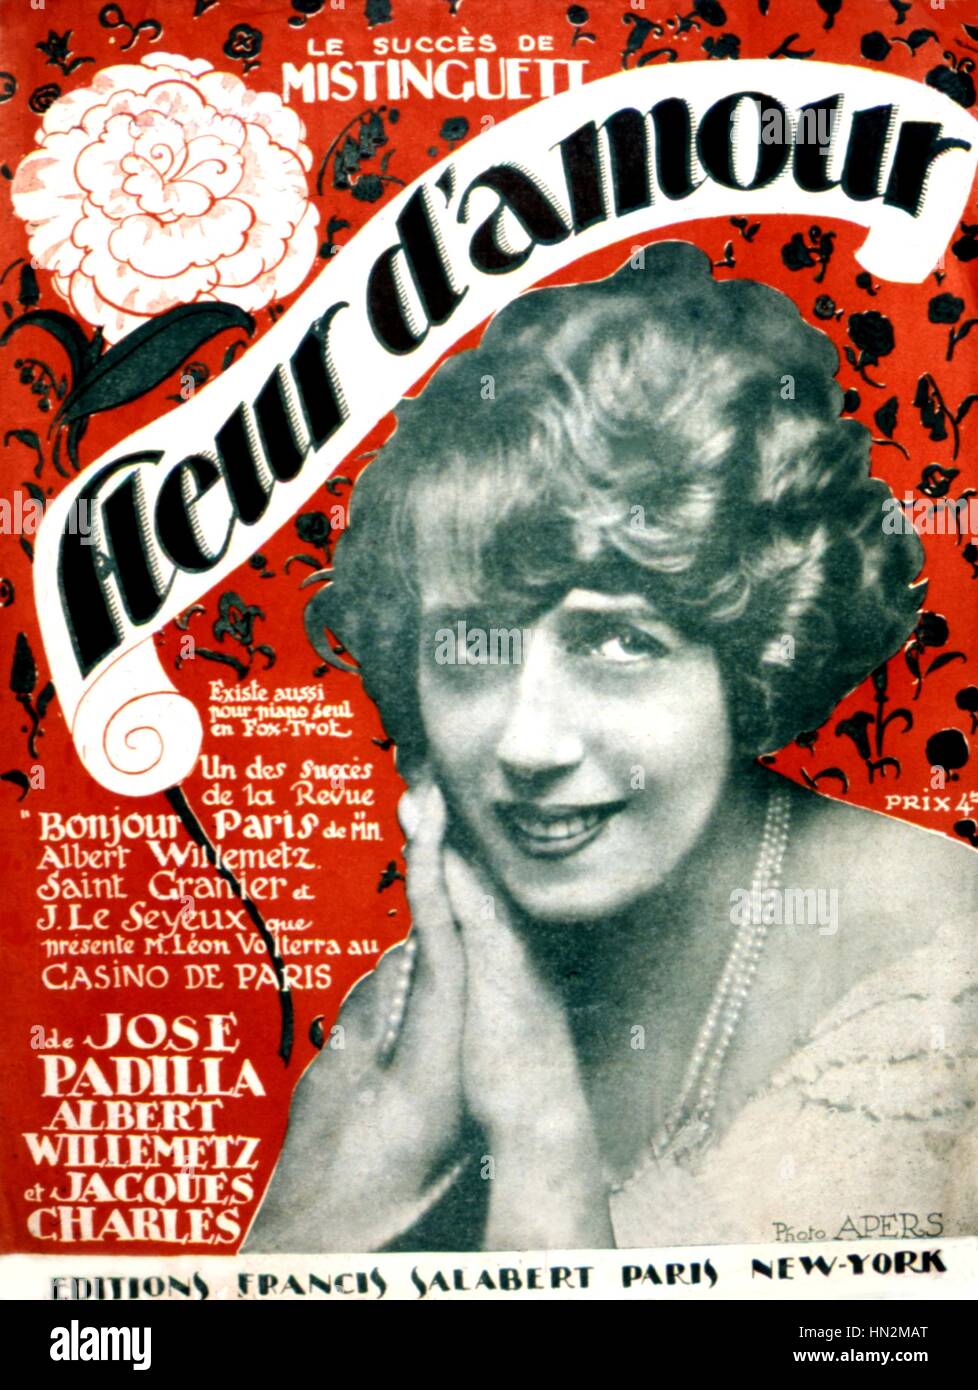 Cubierta de la edición musical de una canción de Mistinguett: "Fleur d'amour" (Flor de Amor) Francia 1923 Foto de stock